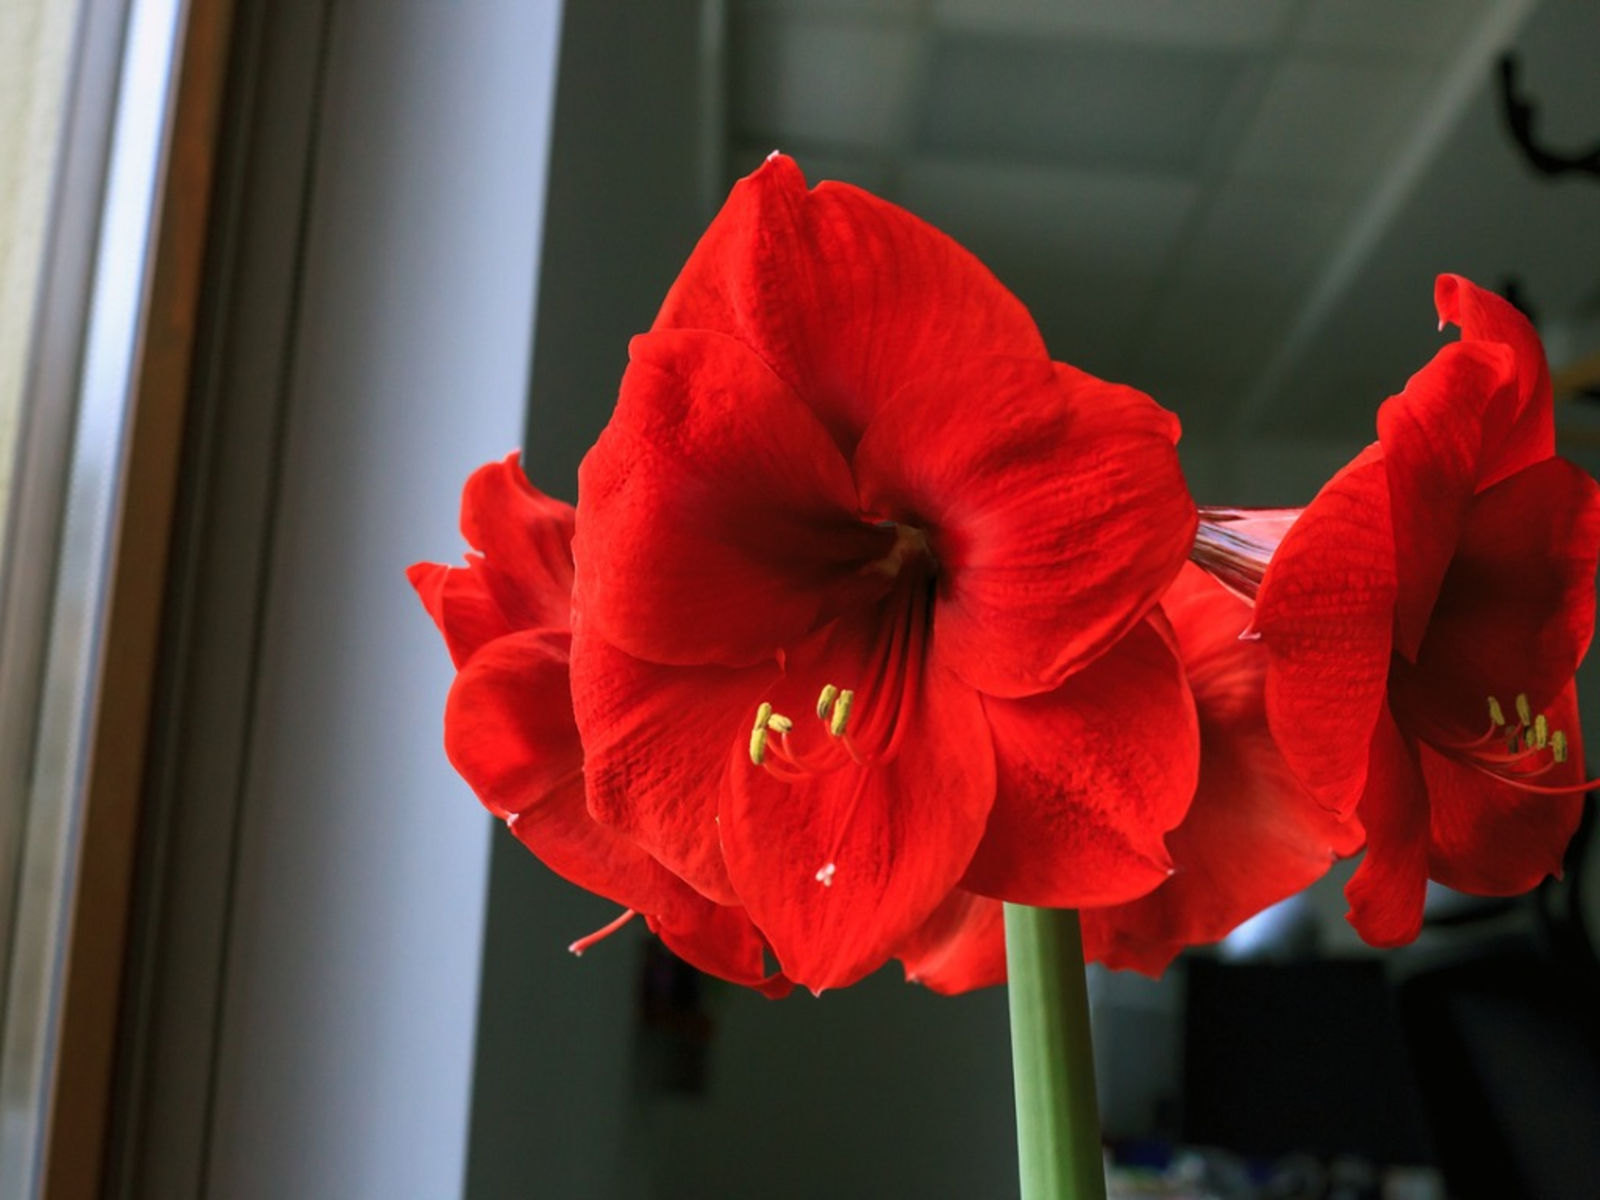 Hoa loa kèn đỏ có ý nghĩa gì? Cách trồng hoa loa kèn đỏ nở đúng Tết